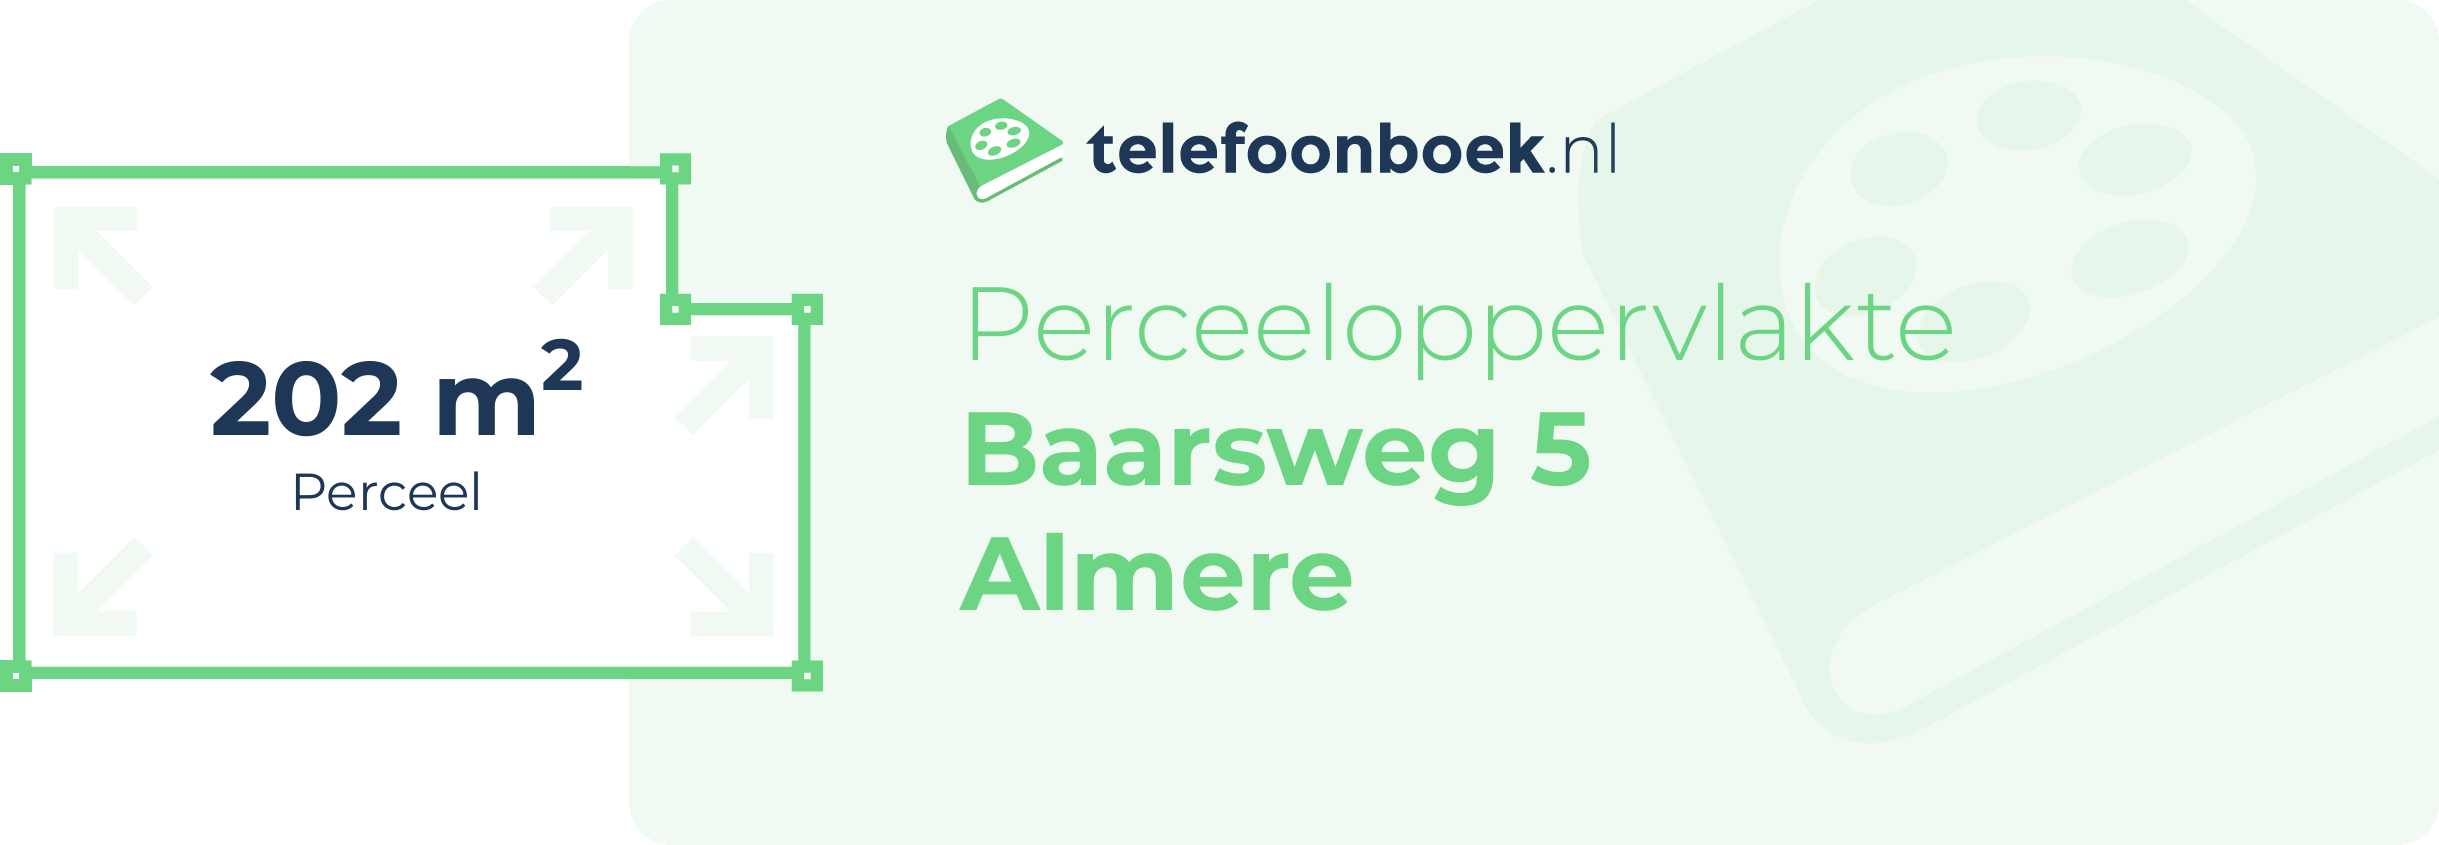 Perceeloppervlakte Baarsweg 5 Almere